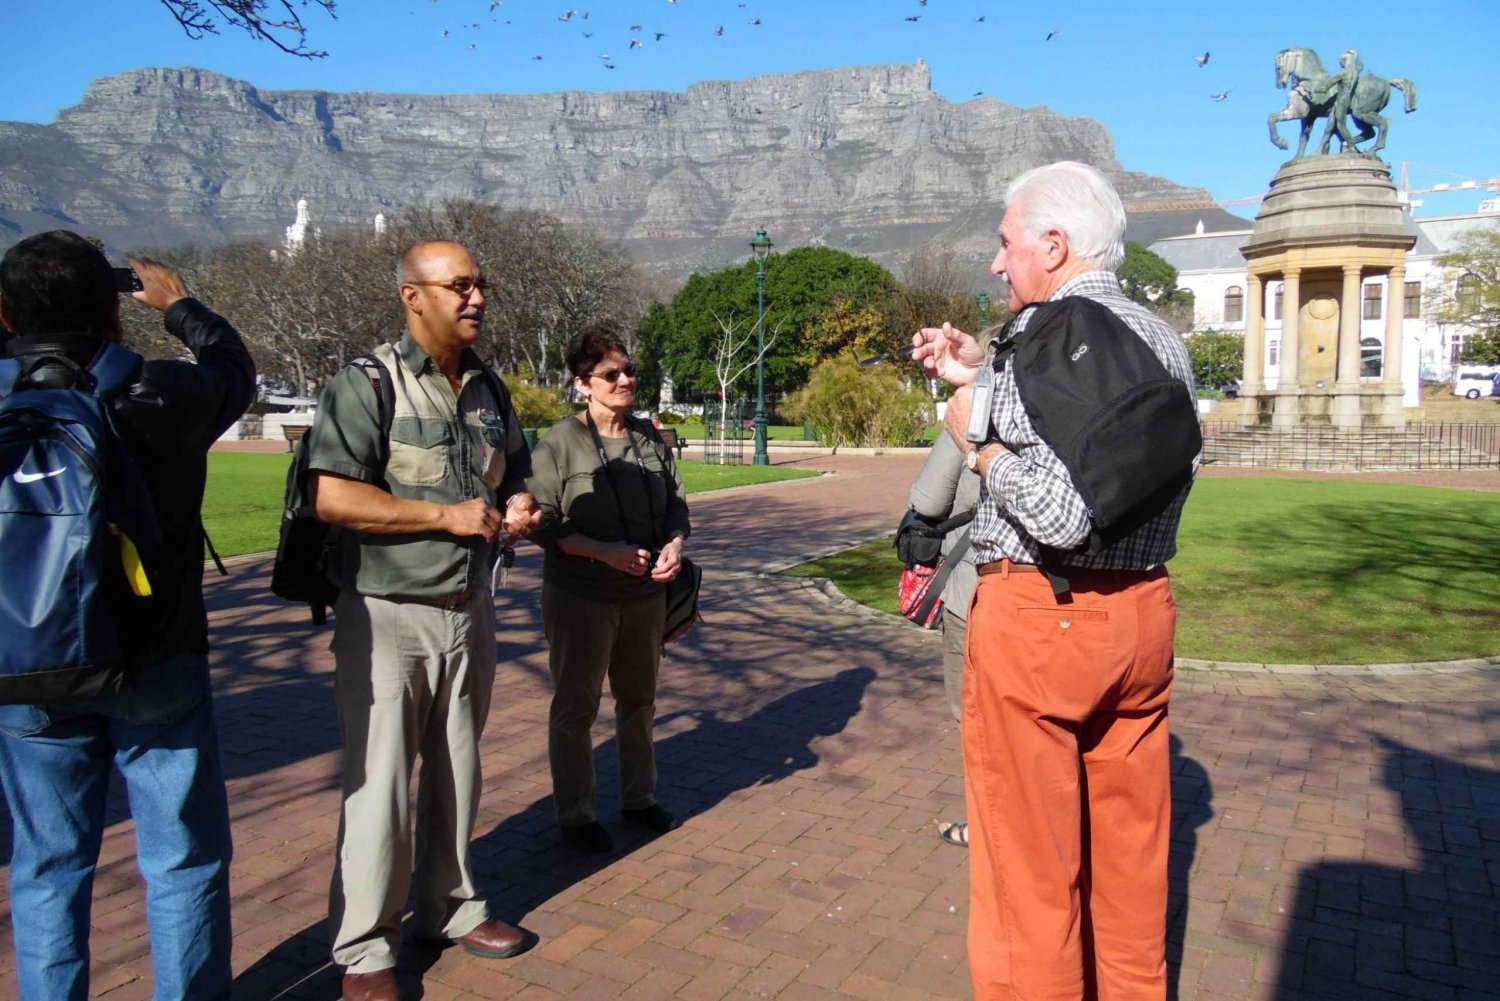 Kapstaden: Spektakulära botaniska trädgårdar med guidad tur